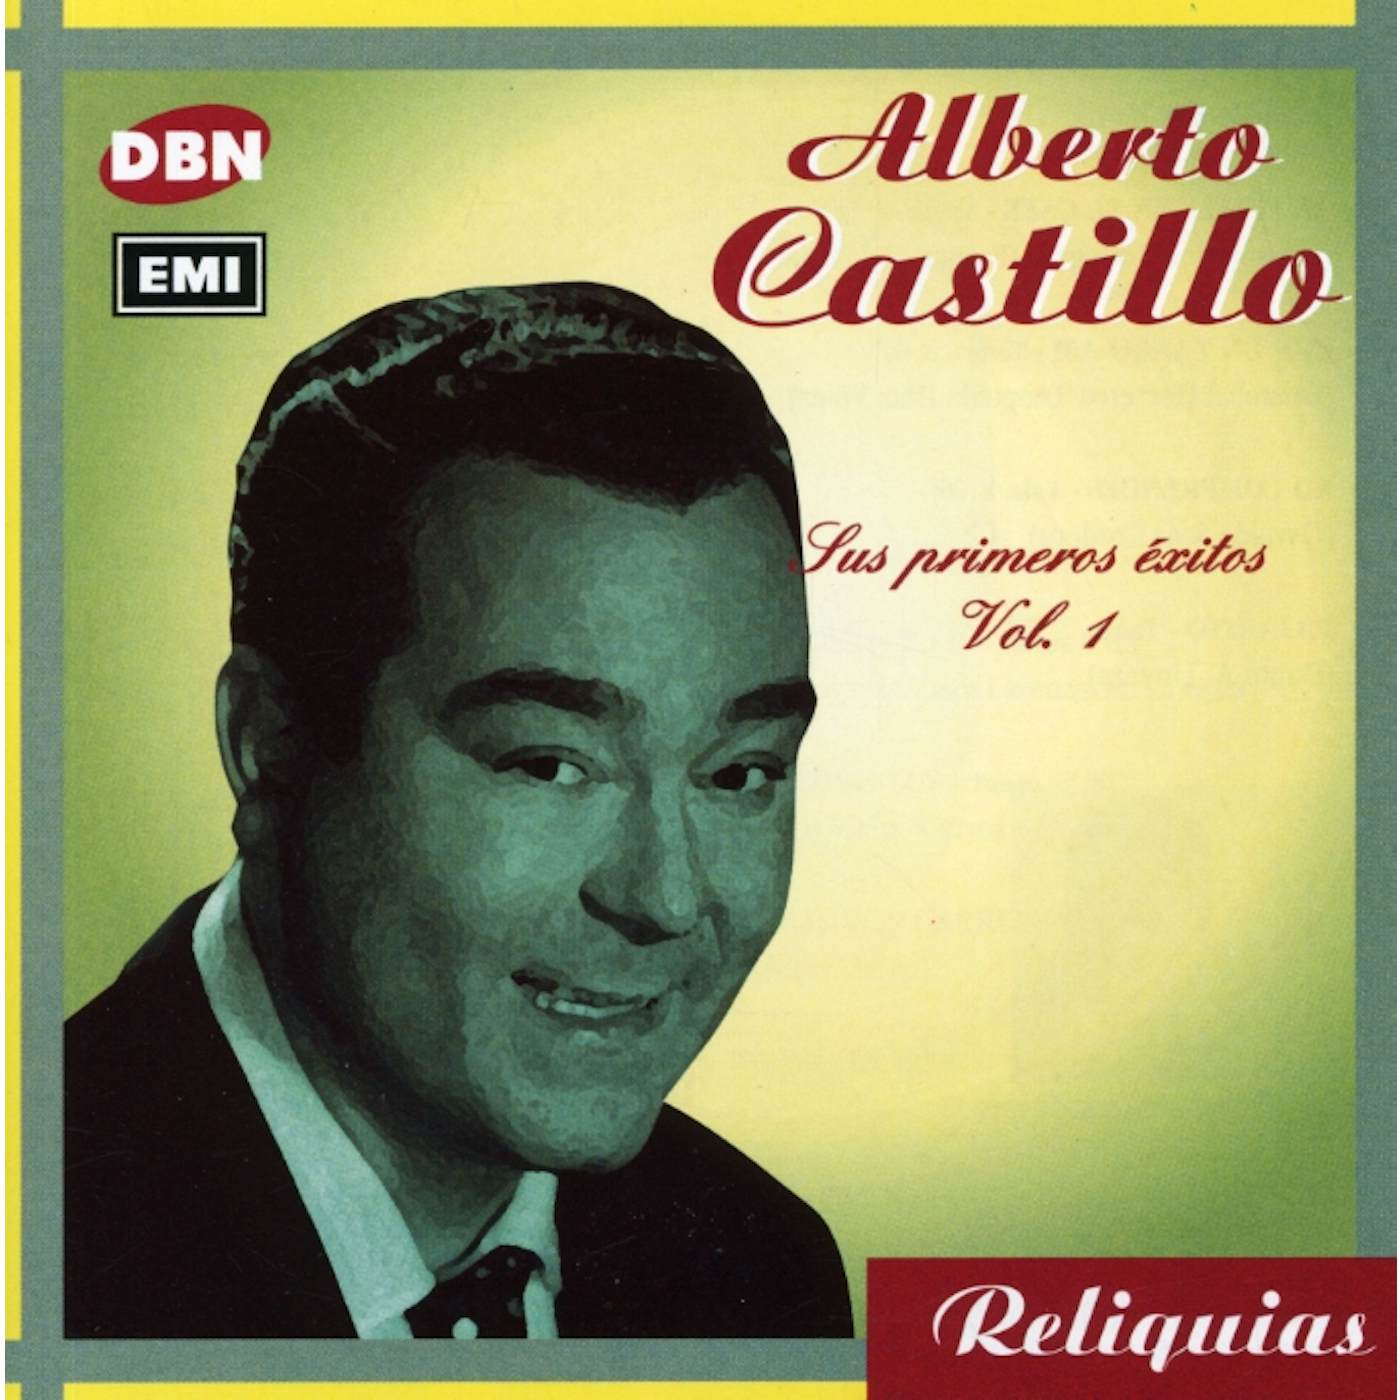 Alberto Castillo VOL. 1-SUS PRIMEROS EXITOS CD